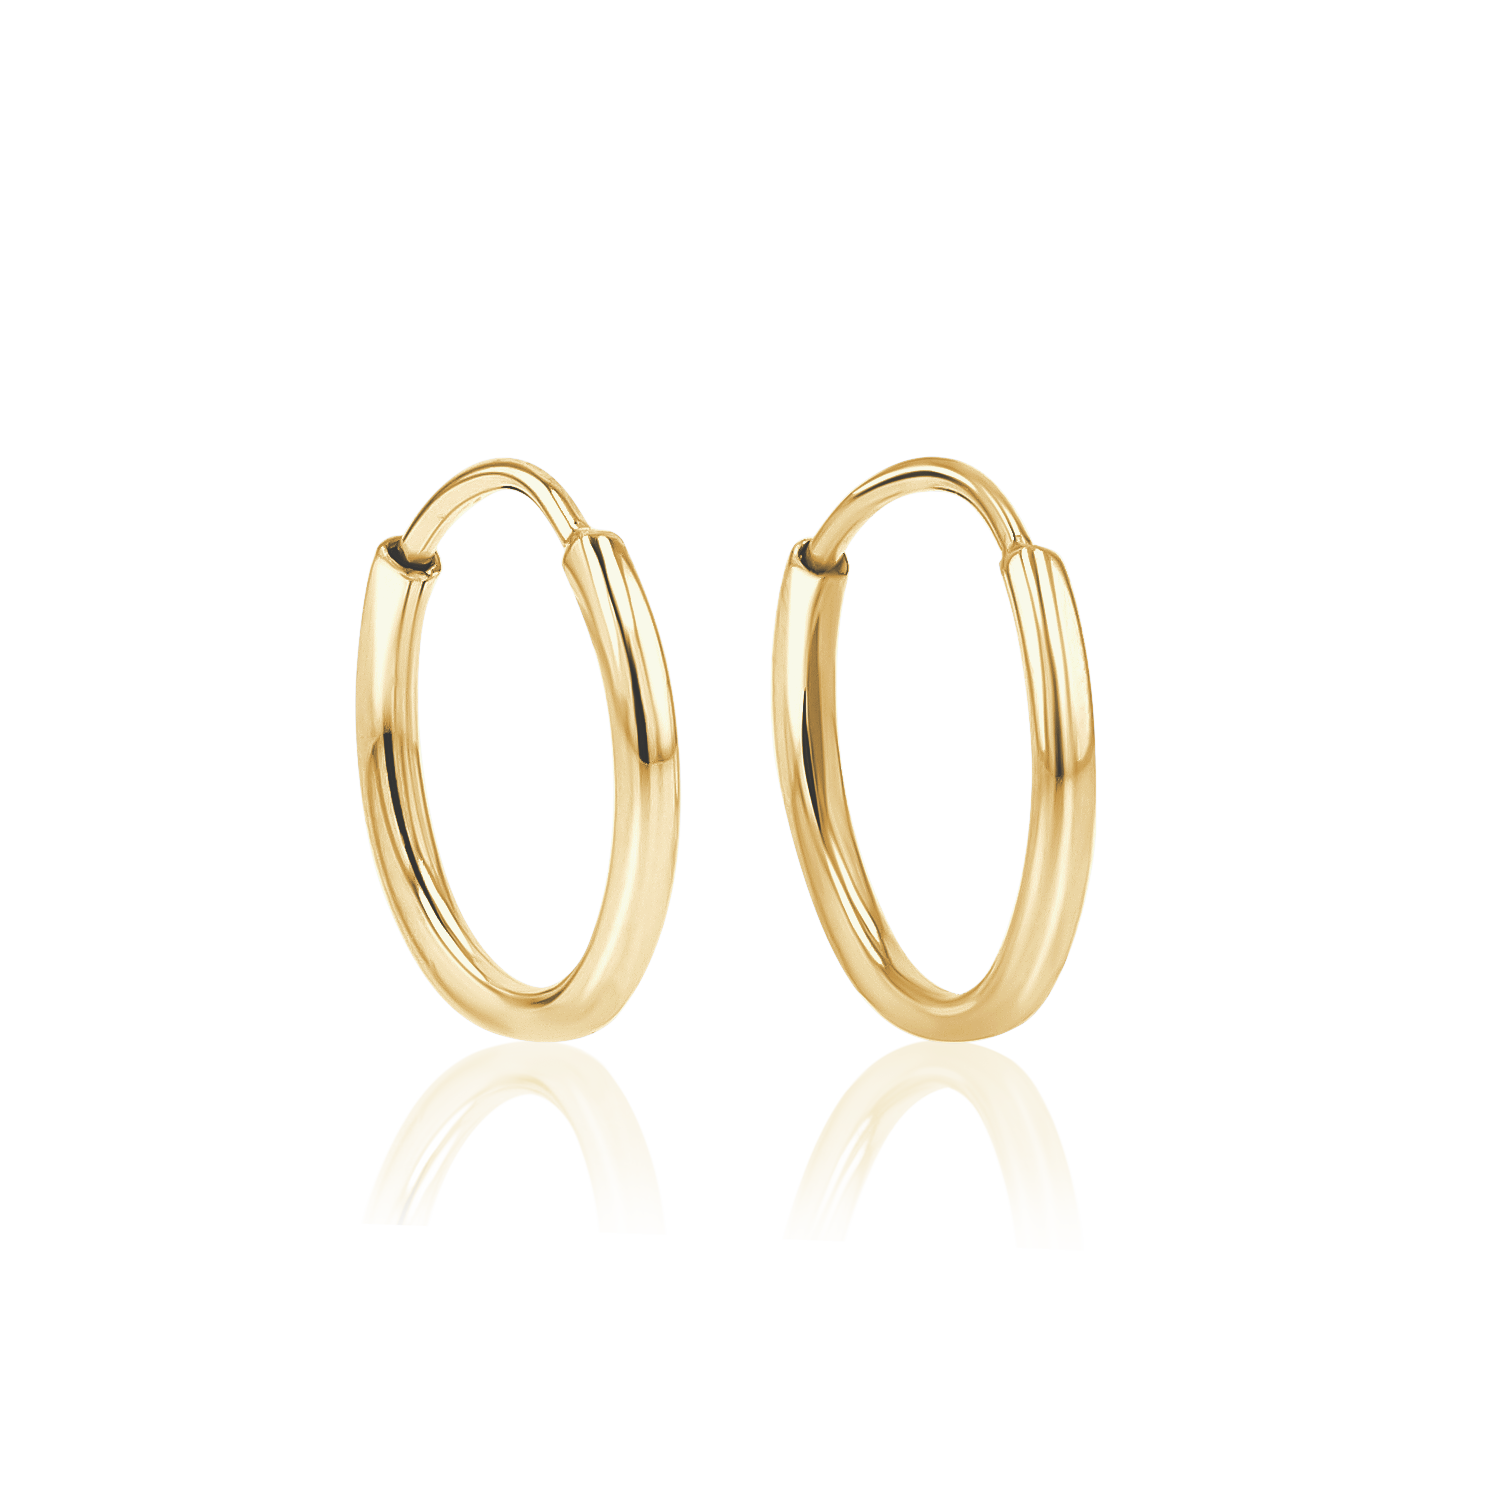 Baby Gold 4mm Gold Tube Hoop Earrings